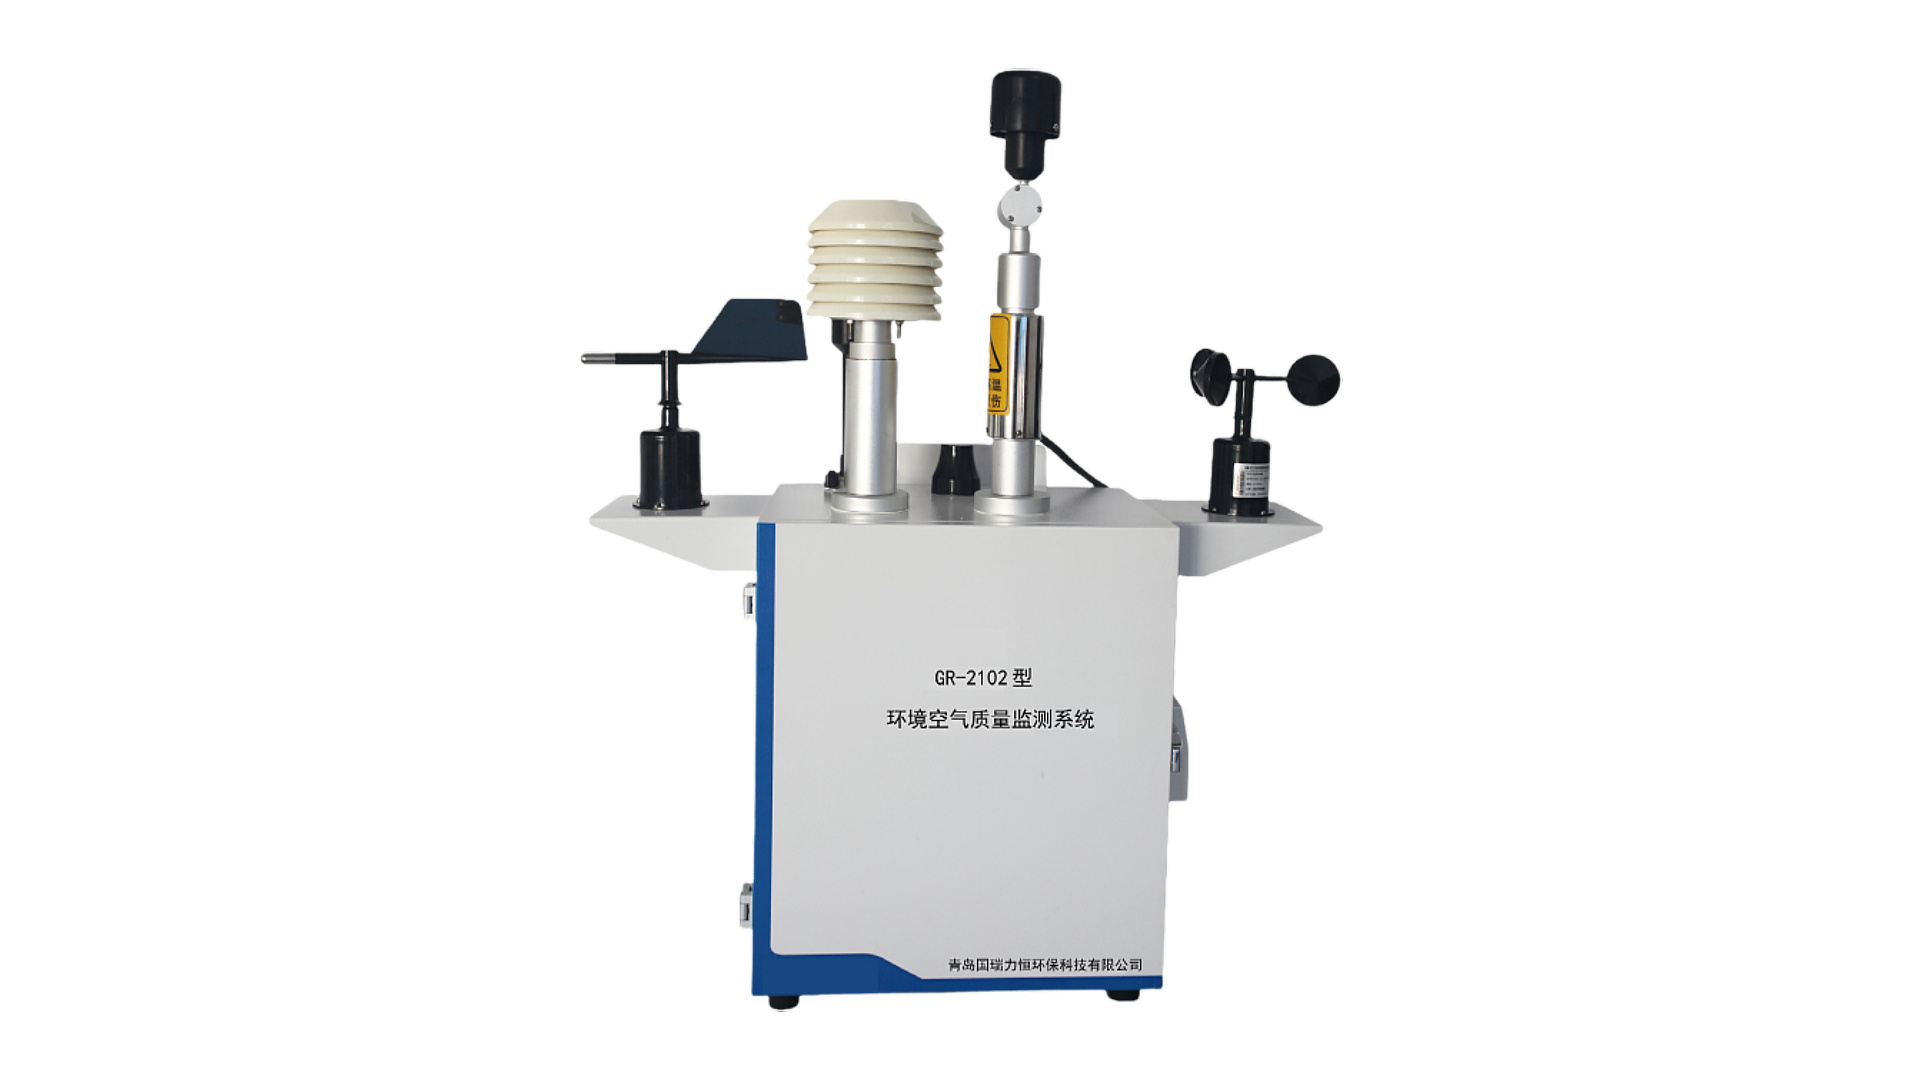 GR-2102型环境空气质量监测系统工作原理